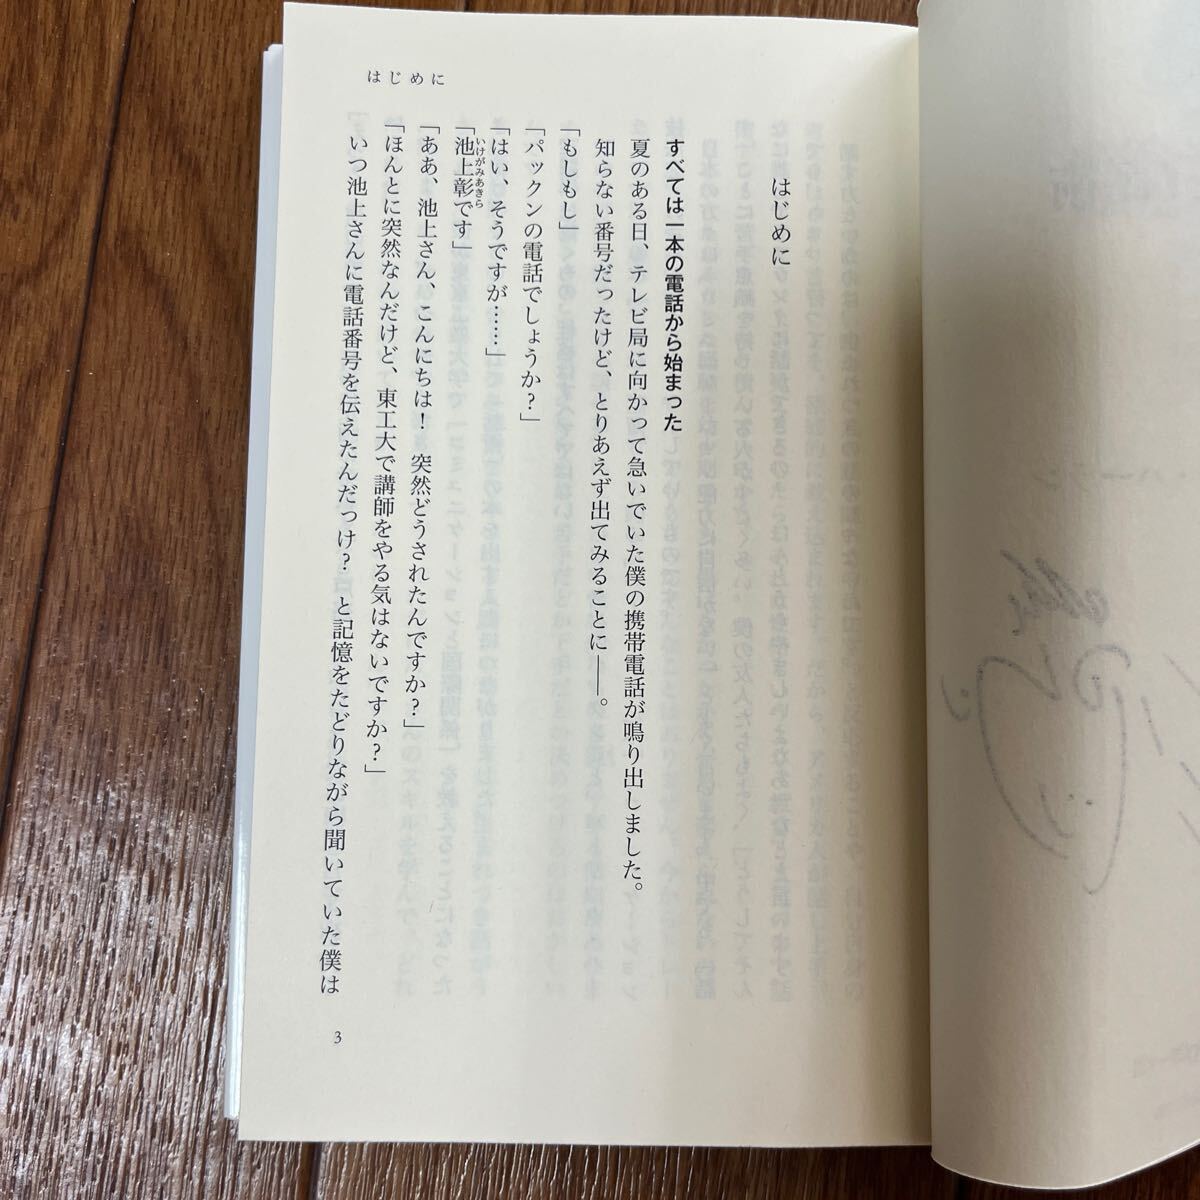 [ подпись книга@/ первая версия ] Patrick * Harlan [tsuka.! рассказ .] упаковка n Kadokawa one Thema 21 2 -слойный покрытие автограф книга